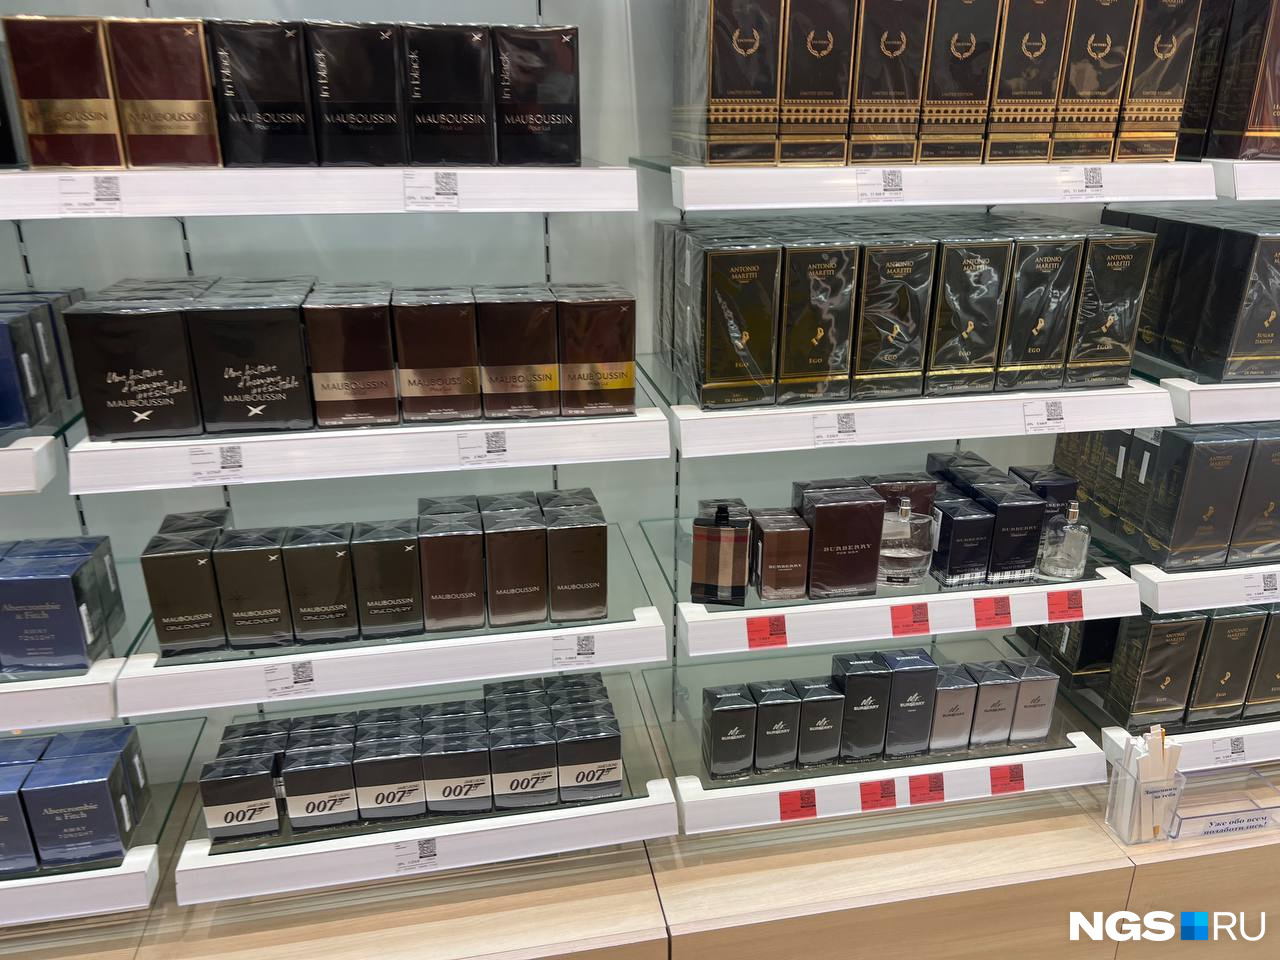 Легальная парфюмерия из магазинов сегодня доступна не всем